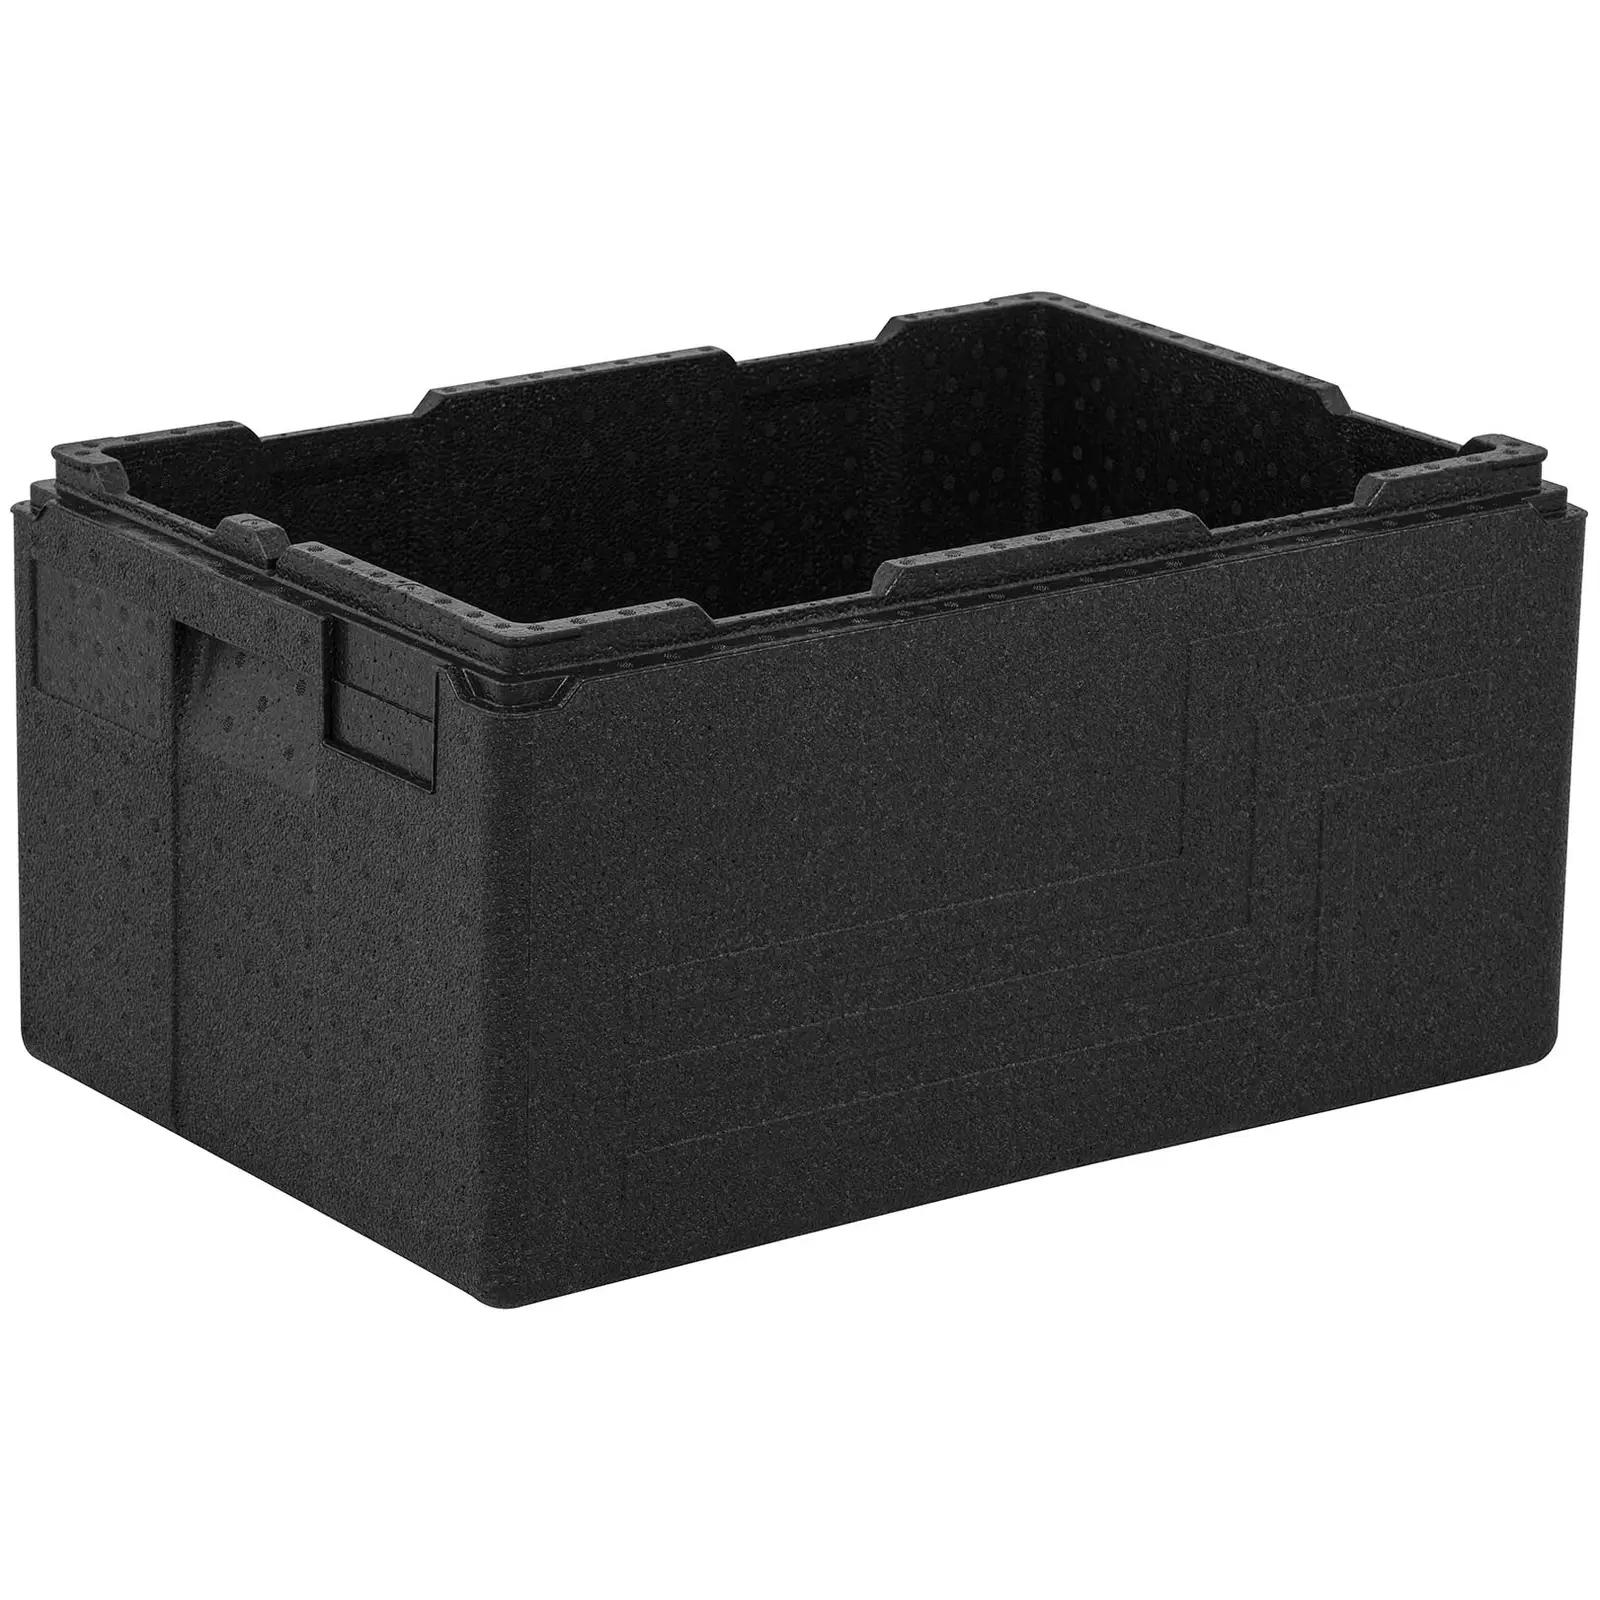 Box termico per alimenti da asporto - contenitori GN 1/1 (profondità 20 cm) - Base